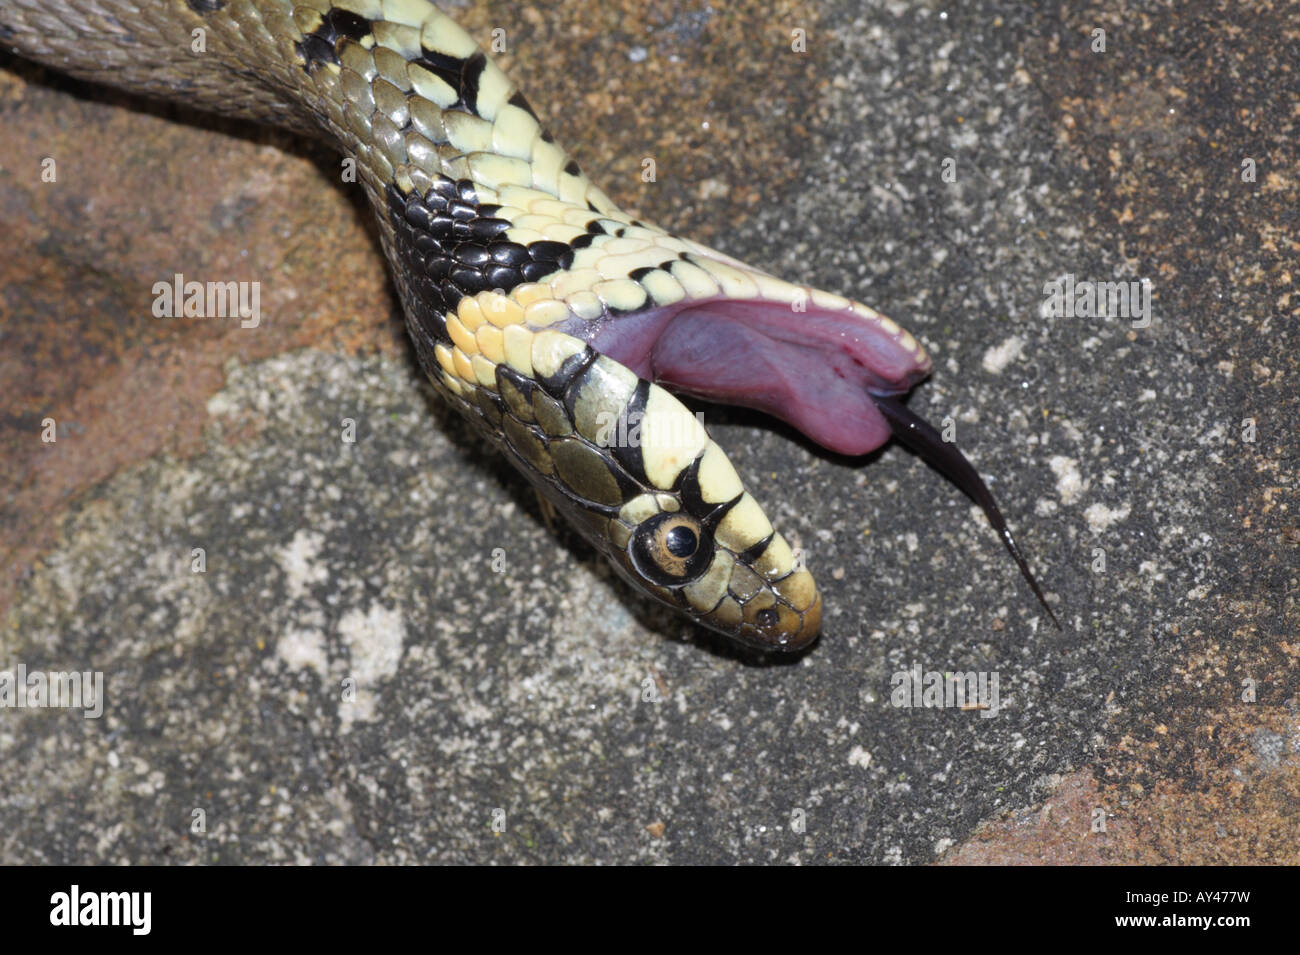 Eastern Hognose Snake Playing Dead - Stock Image - C002/1935